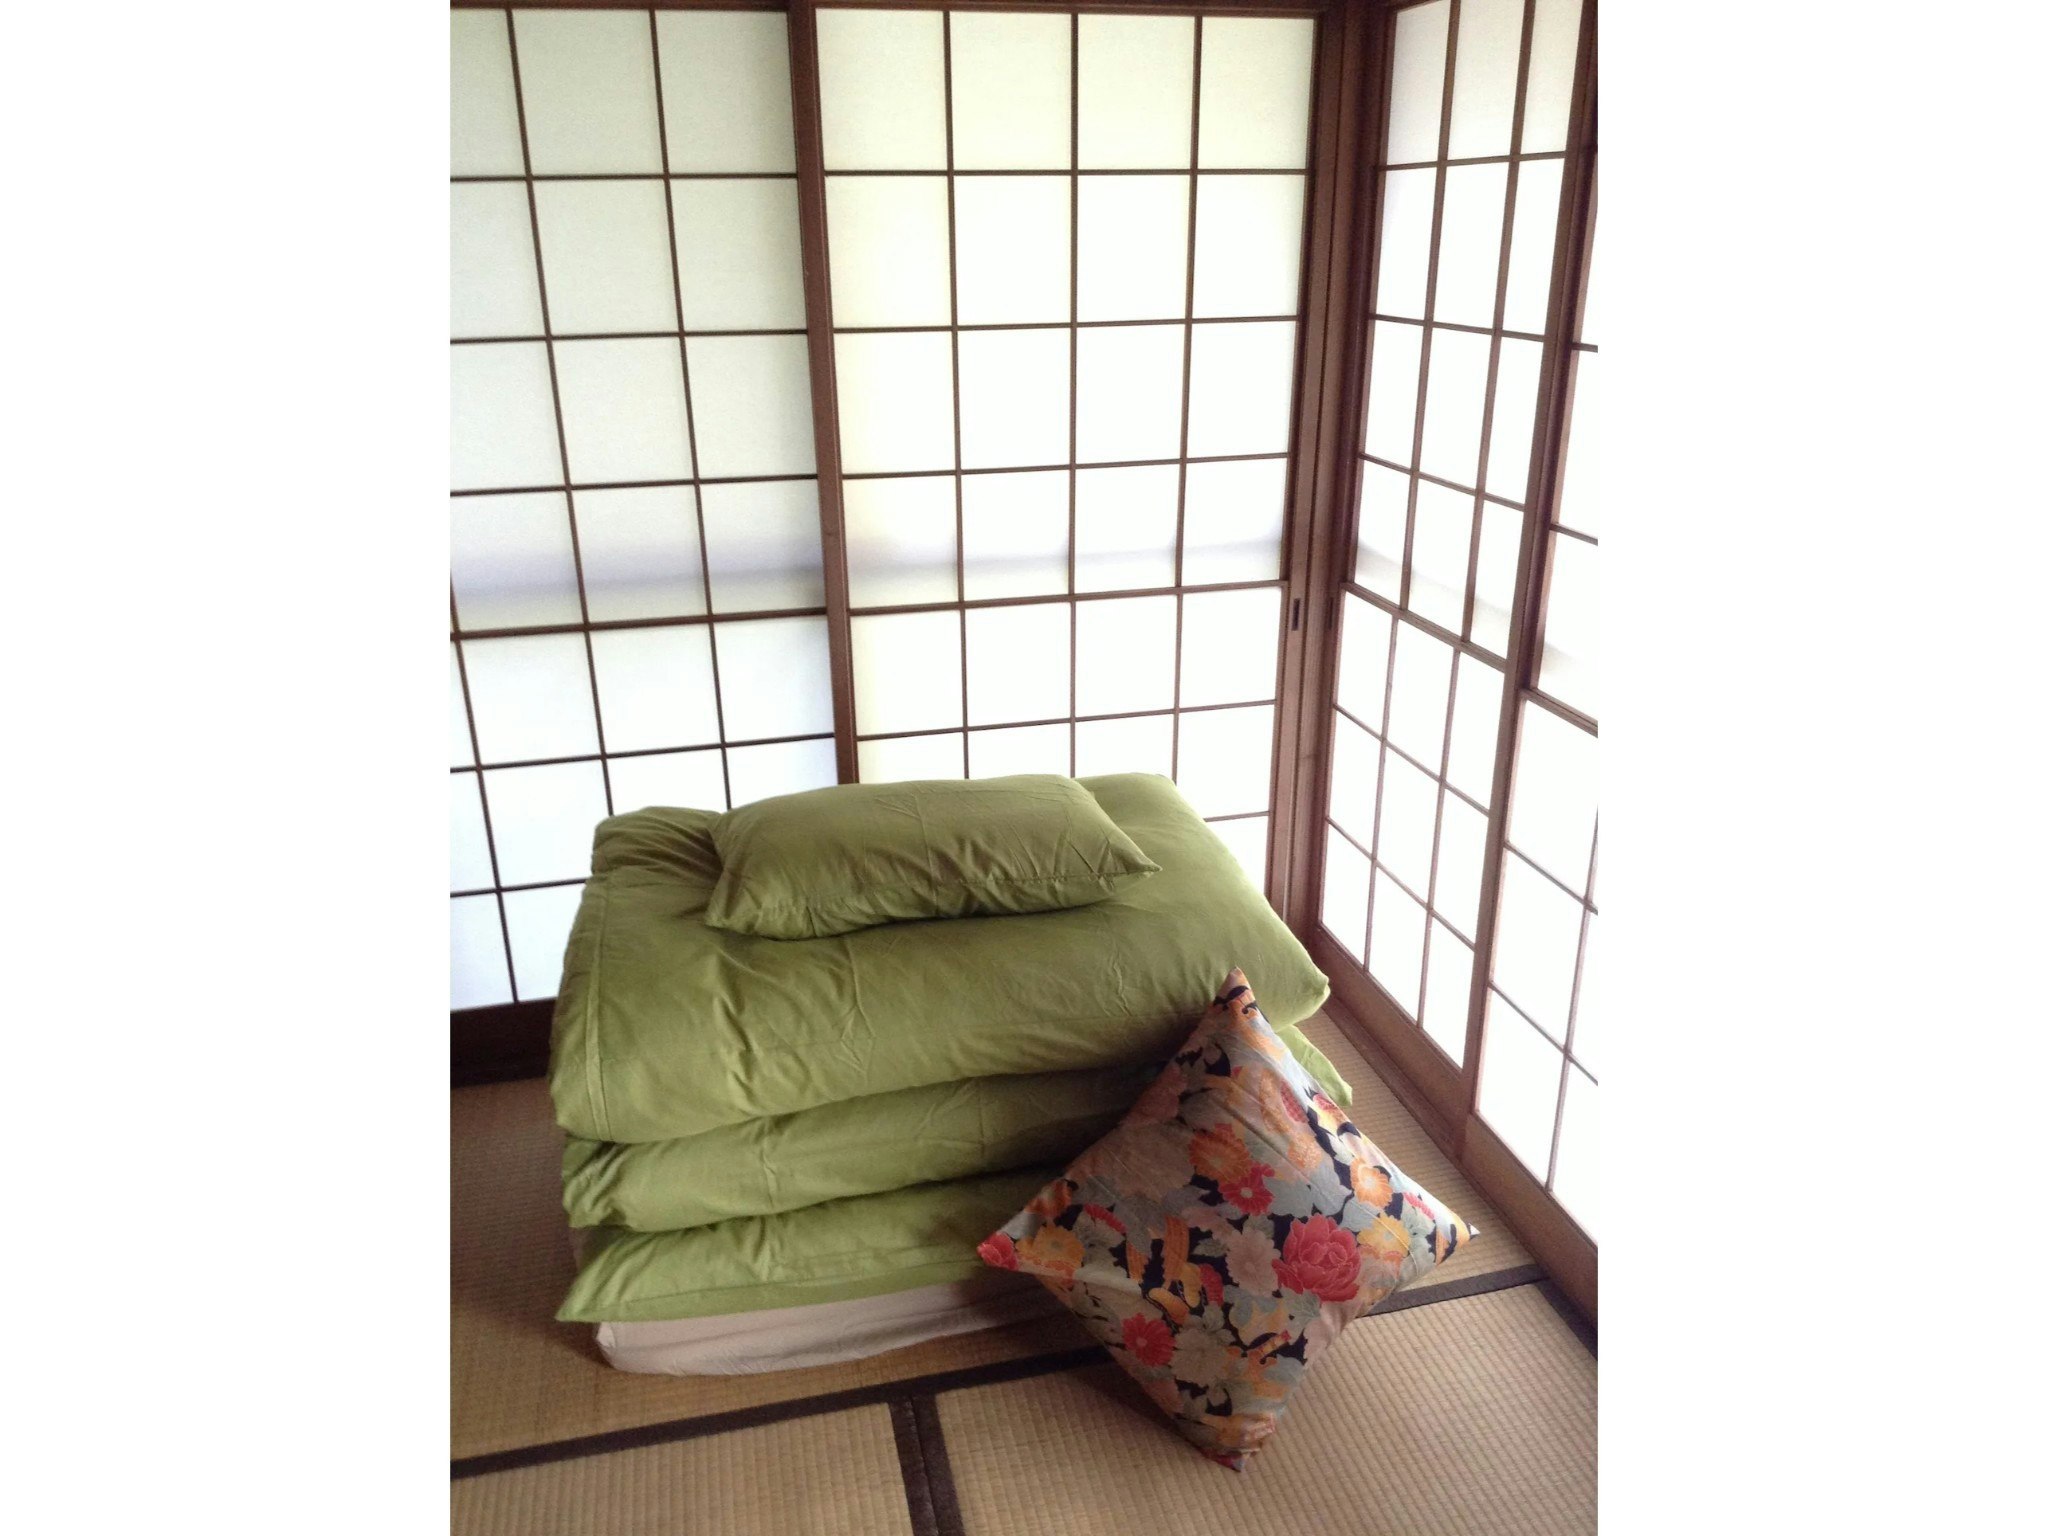 伝統的な日本家屋と周辺の自然